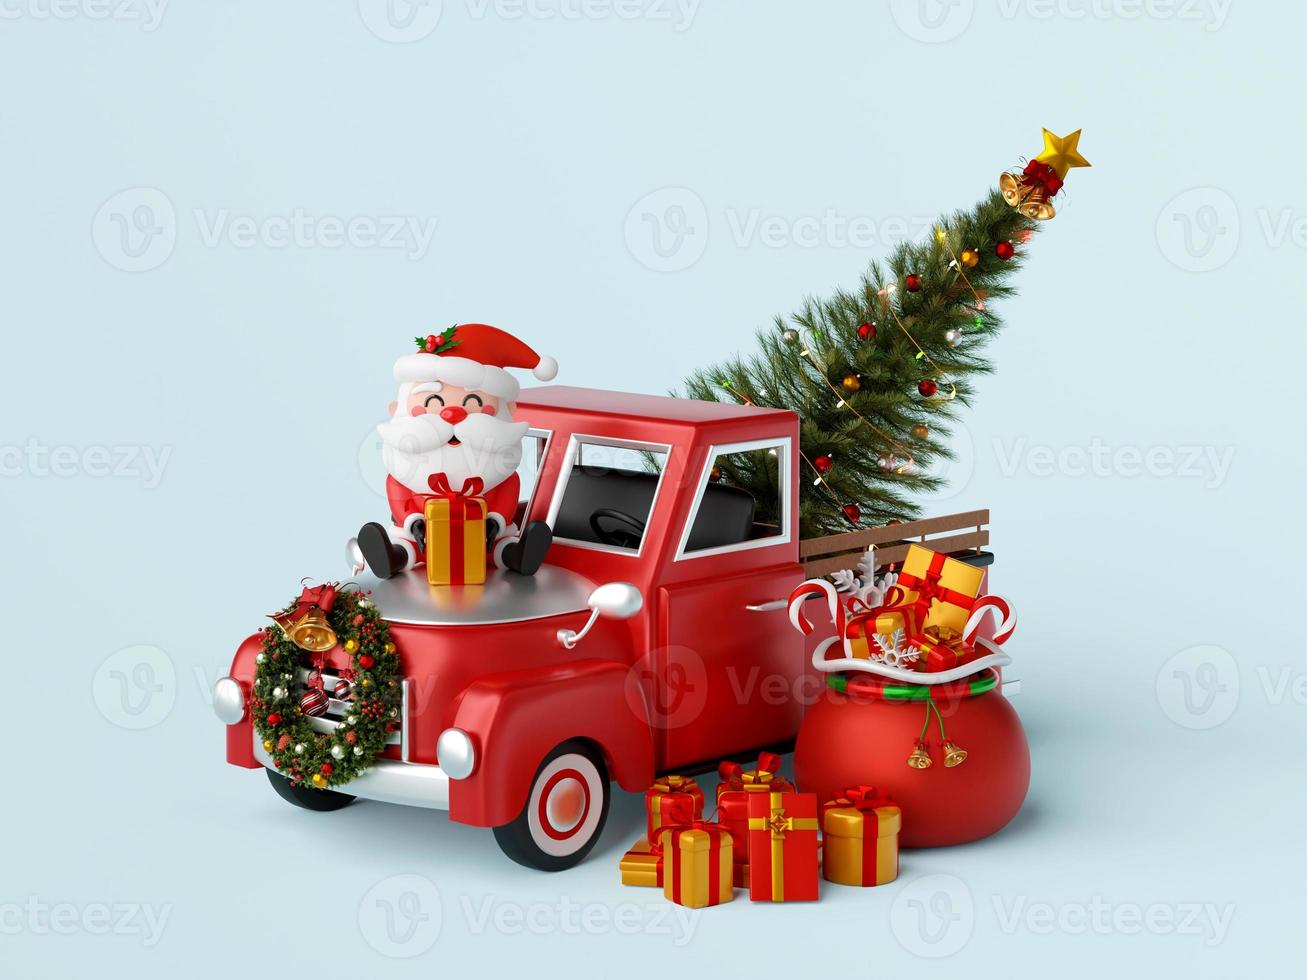 santa claus sitta på jul lastbil bärande jul träd, 3d illustration foto